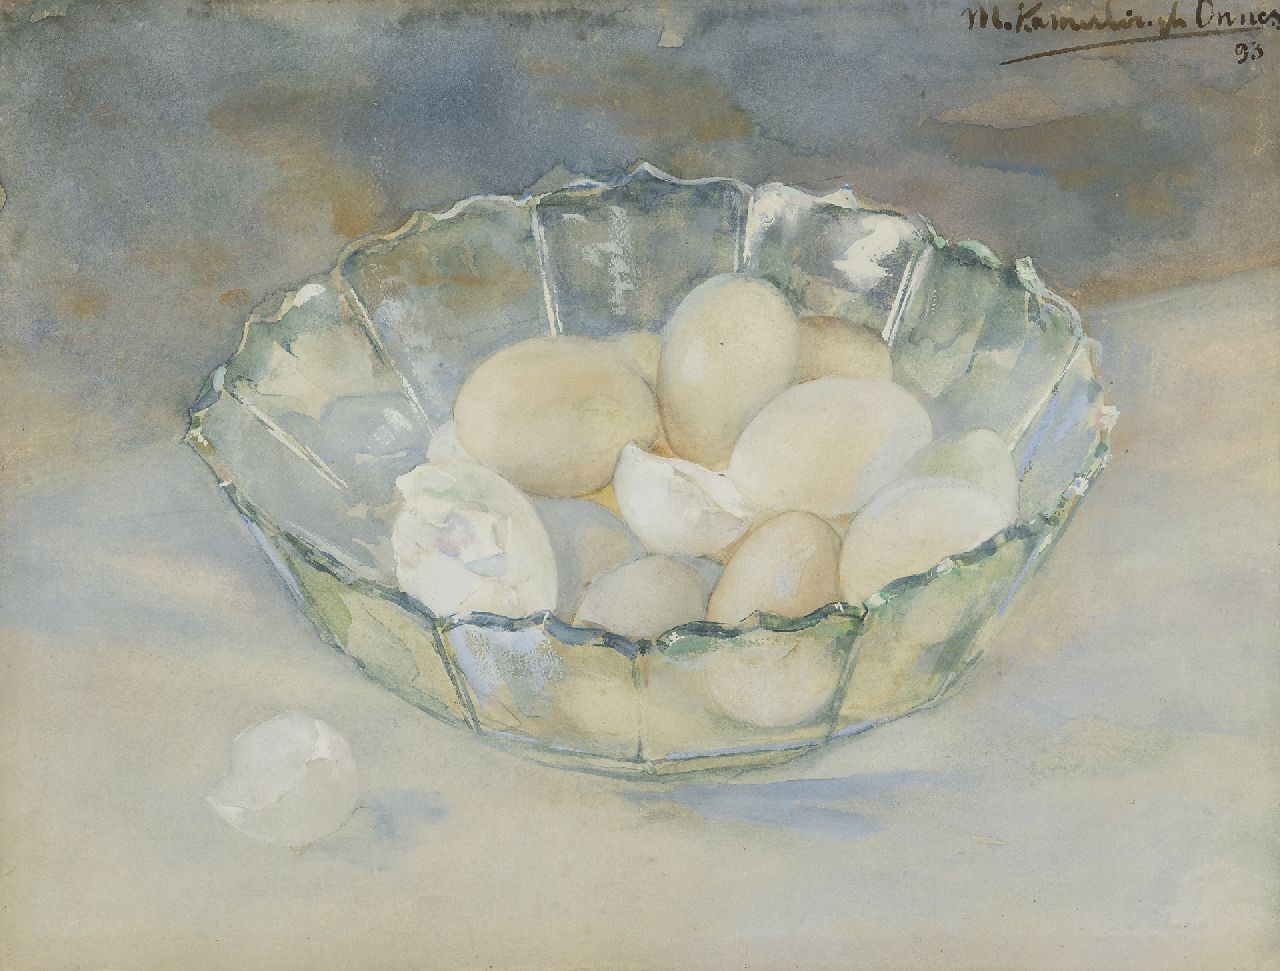 Kamerlingh Onnes M.  | Menso Kamerlingh Onnes, Kristallen schaal met eieren, aquarel op papier 29,8 x 39,1 cm, gesigneerd rechtsboven en gedateerd '93